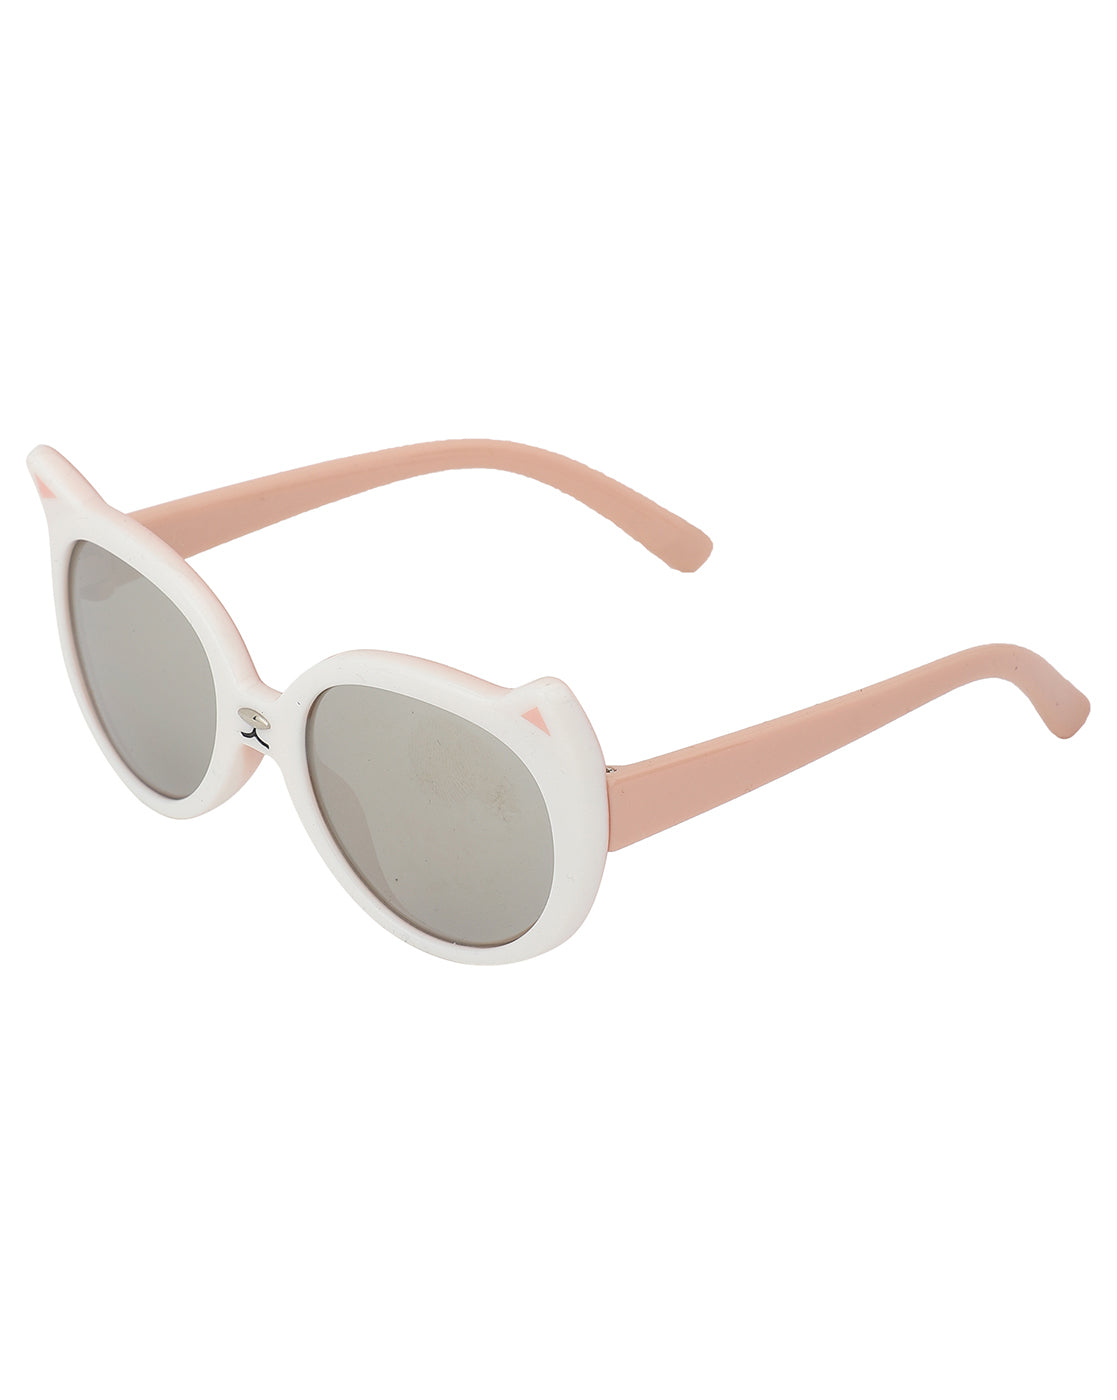 Carlton London Grey Lens &amp; White Cateye Sunglasses For Girl